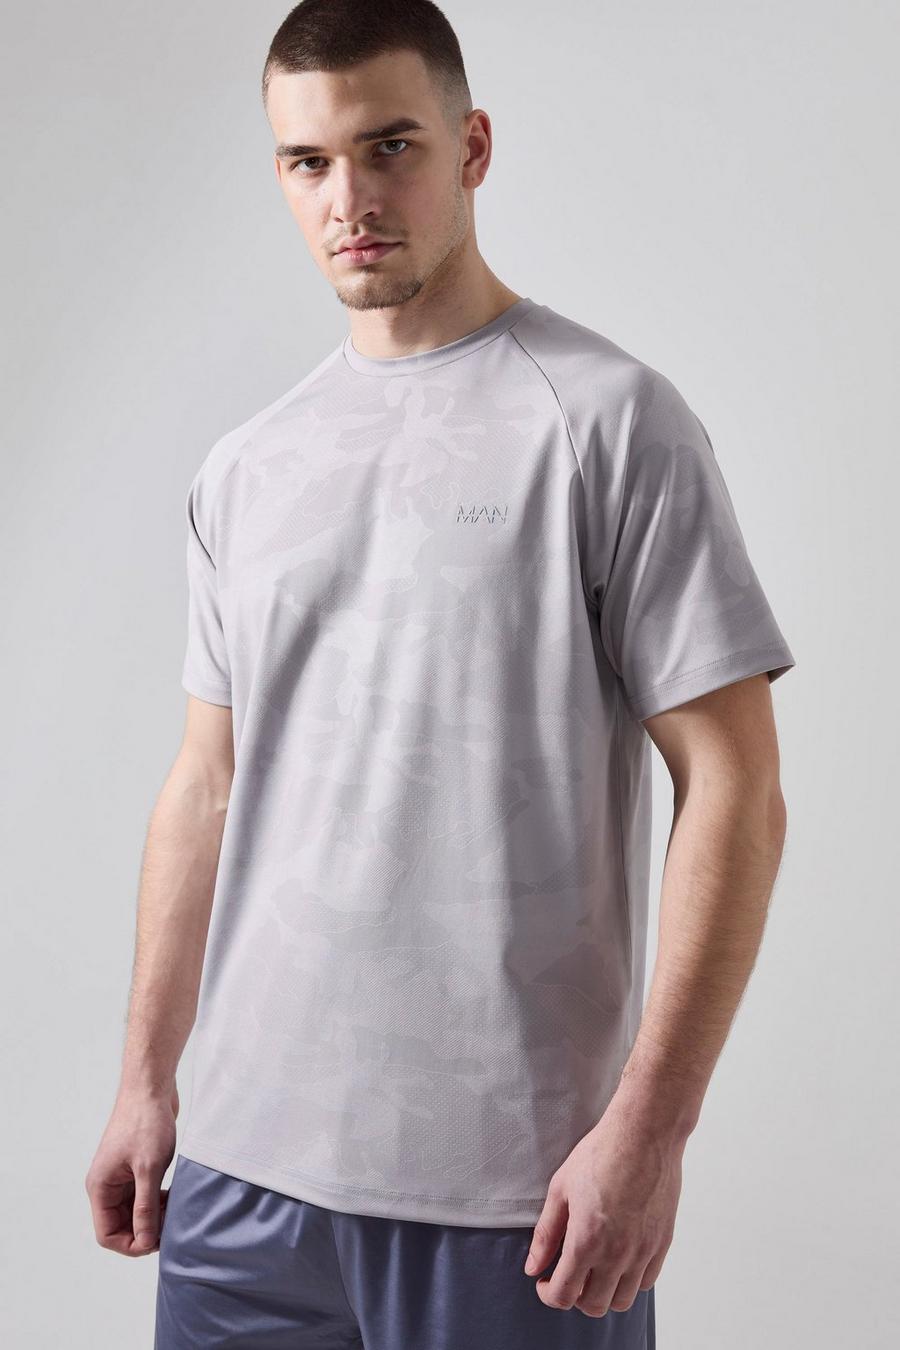 Grey Tall Camo Raglan Man Active Performance T-Shirt